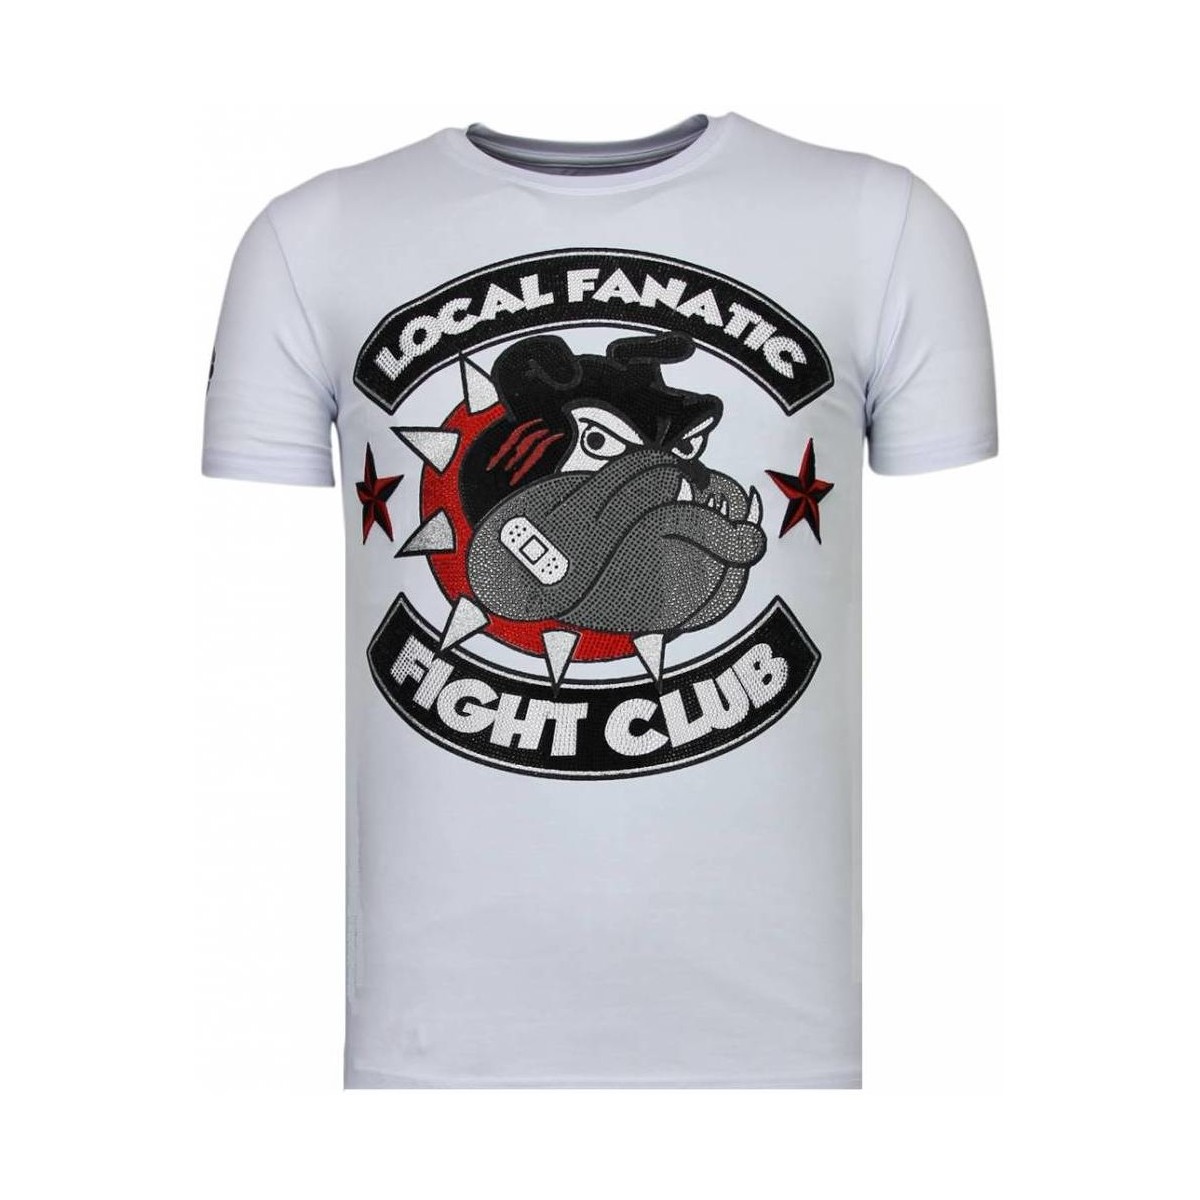 textil Herr T-shirts Local Fanatic Fight Club Spike Rhinestone W Vit